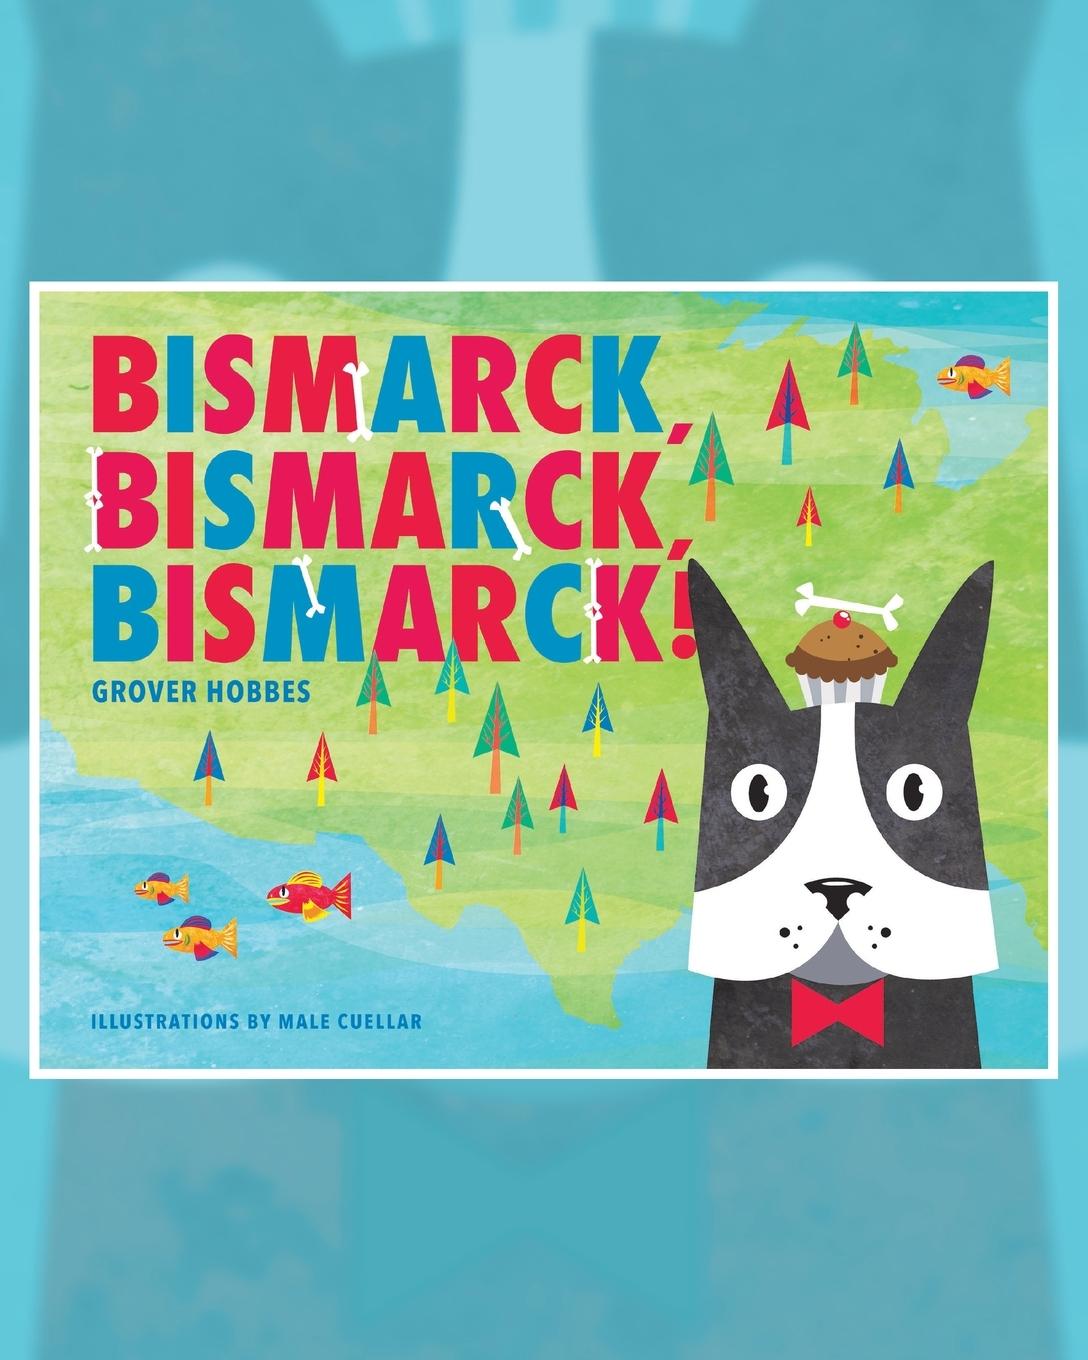 Bismarck Bismarck Bismarck - Hobbes, Grover